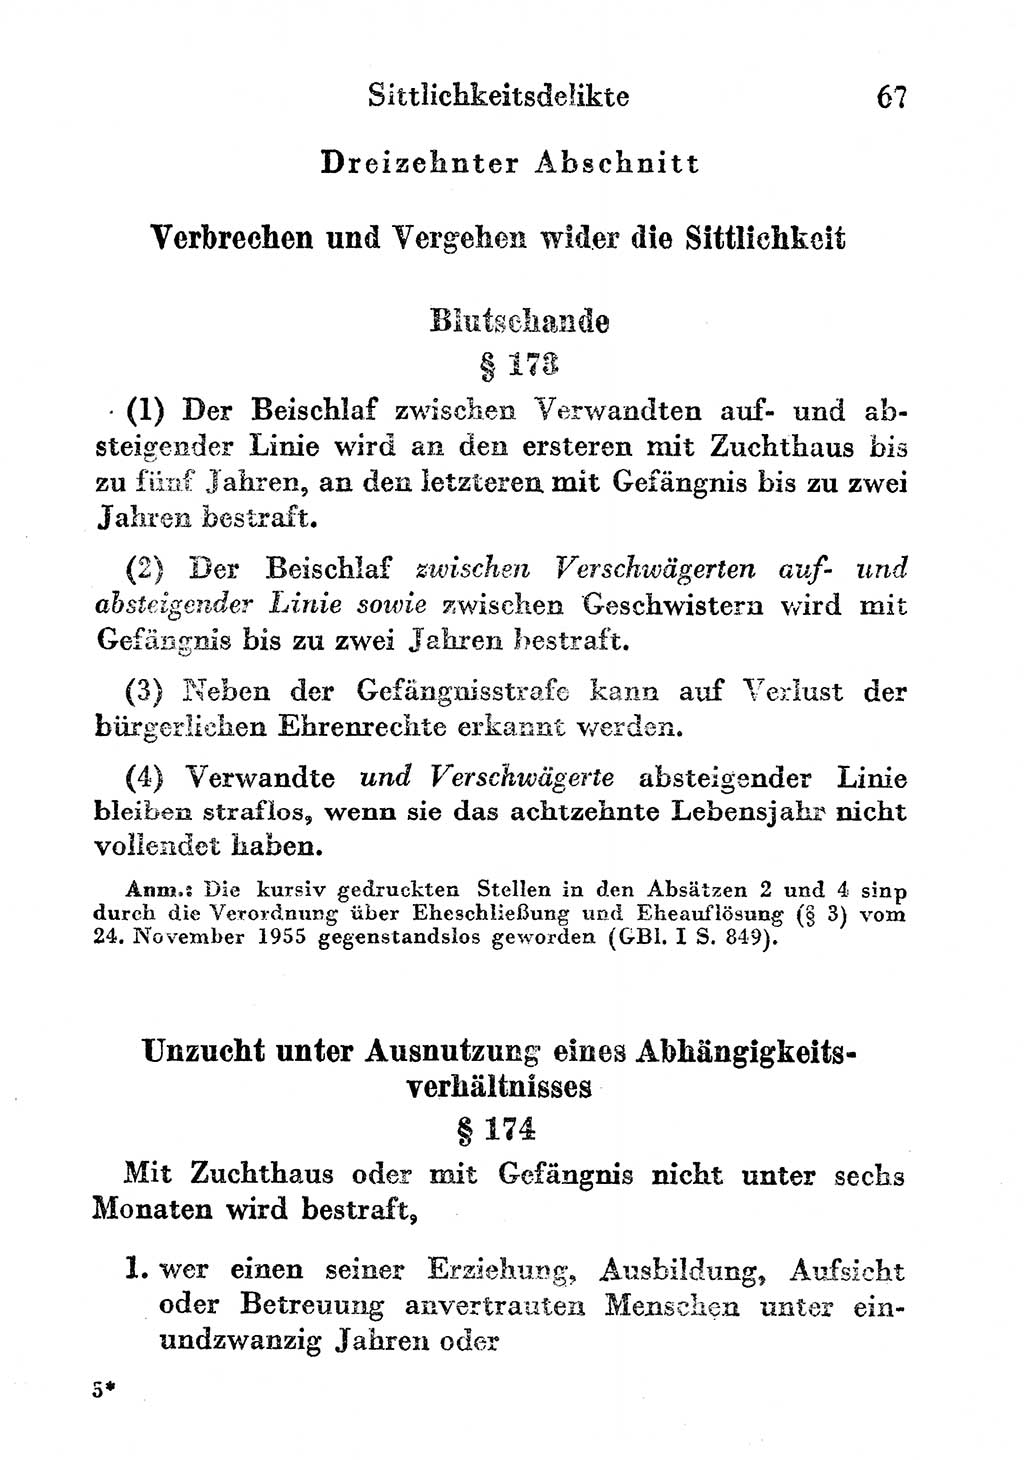 Strafgesetzbuch (StGB) und andere Strafgesetze [Deutsche Demokratische Republik (DDR)] 1956, Seite 67 (StGB Strafges. DDR 1956, S. 67)